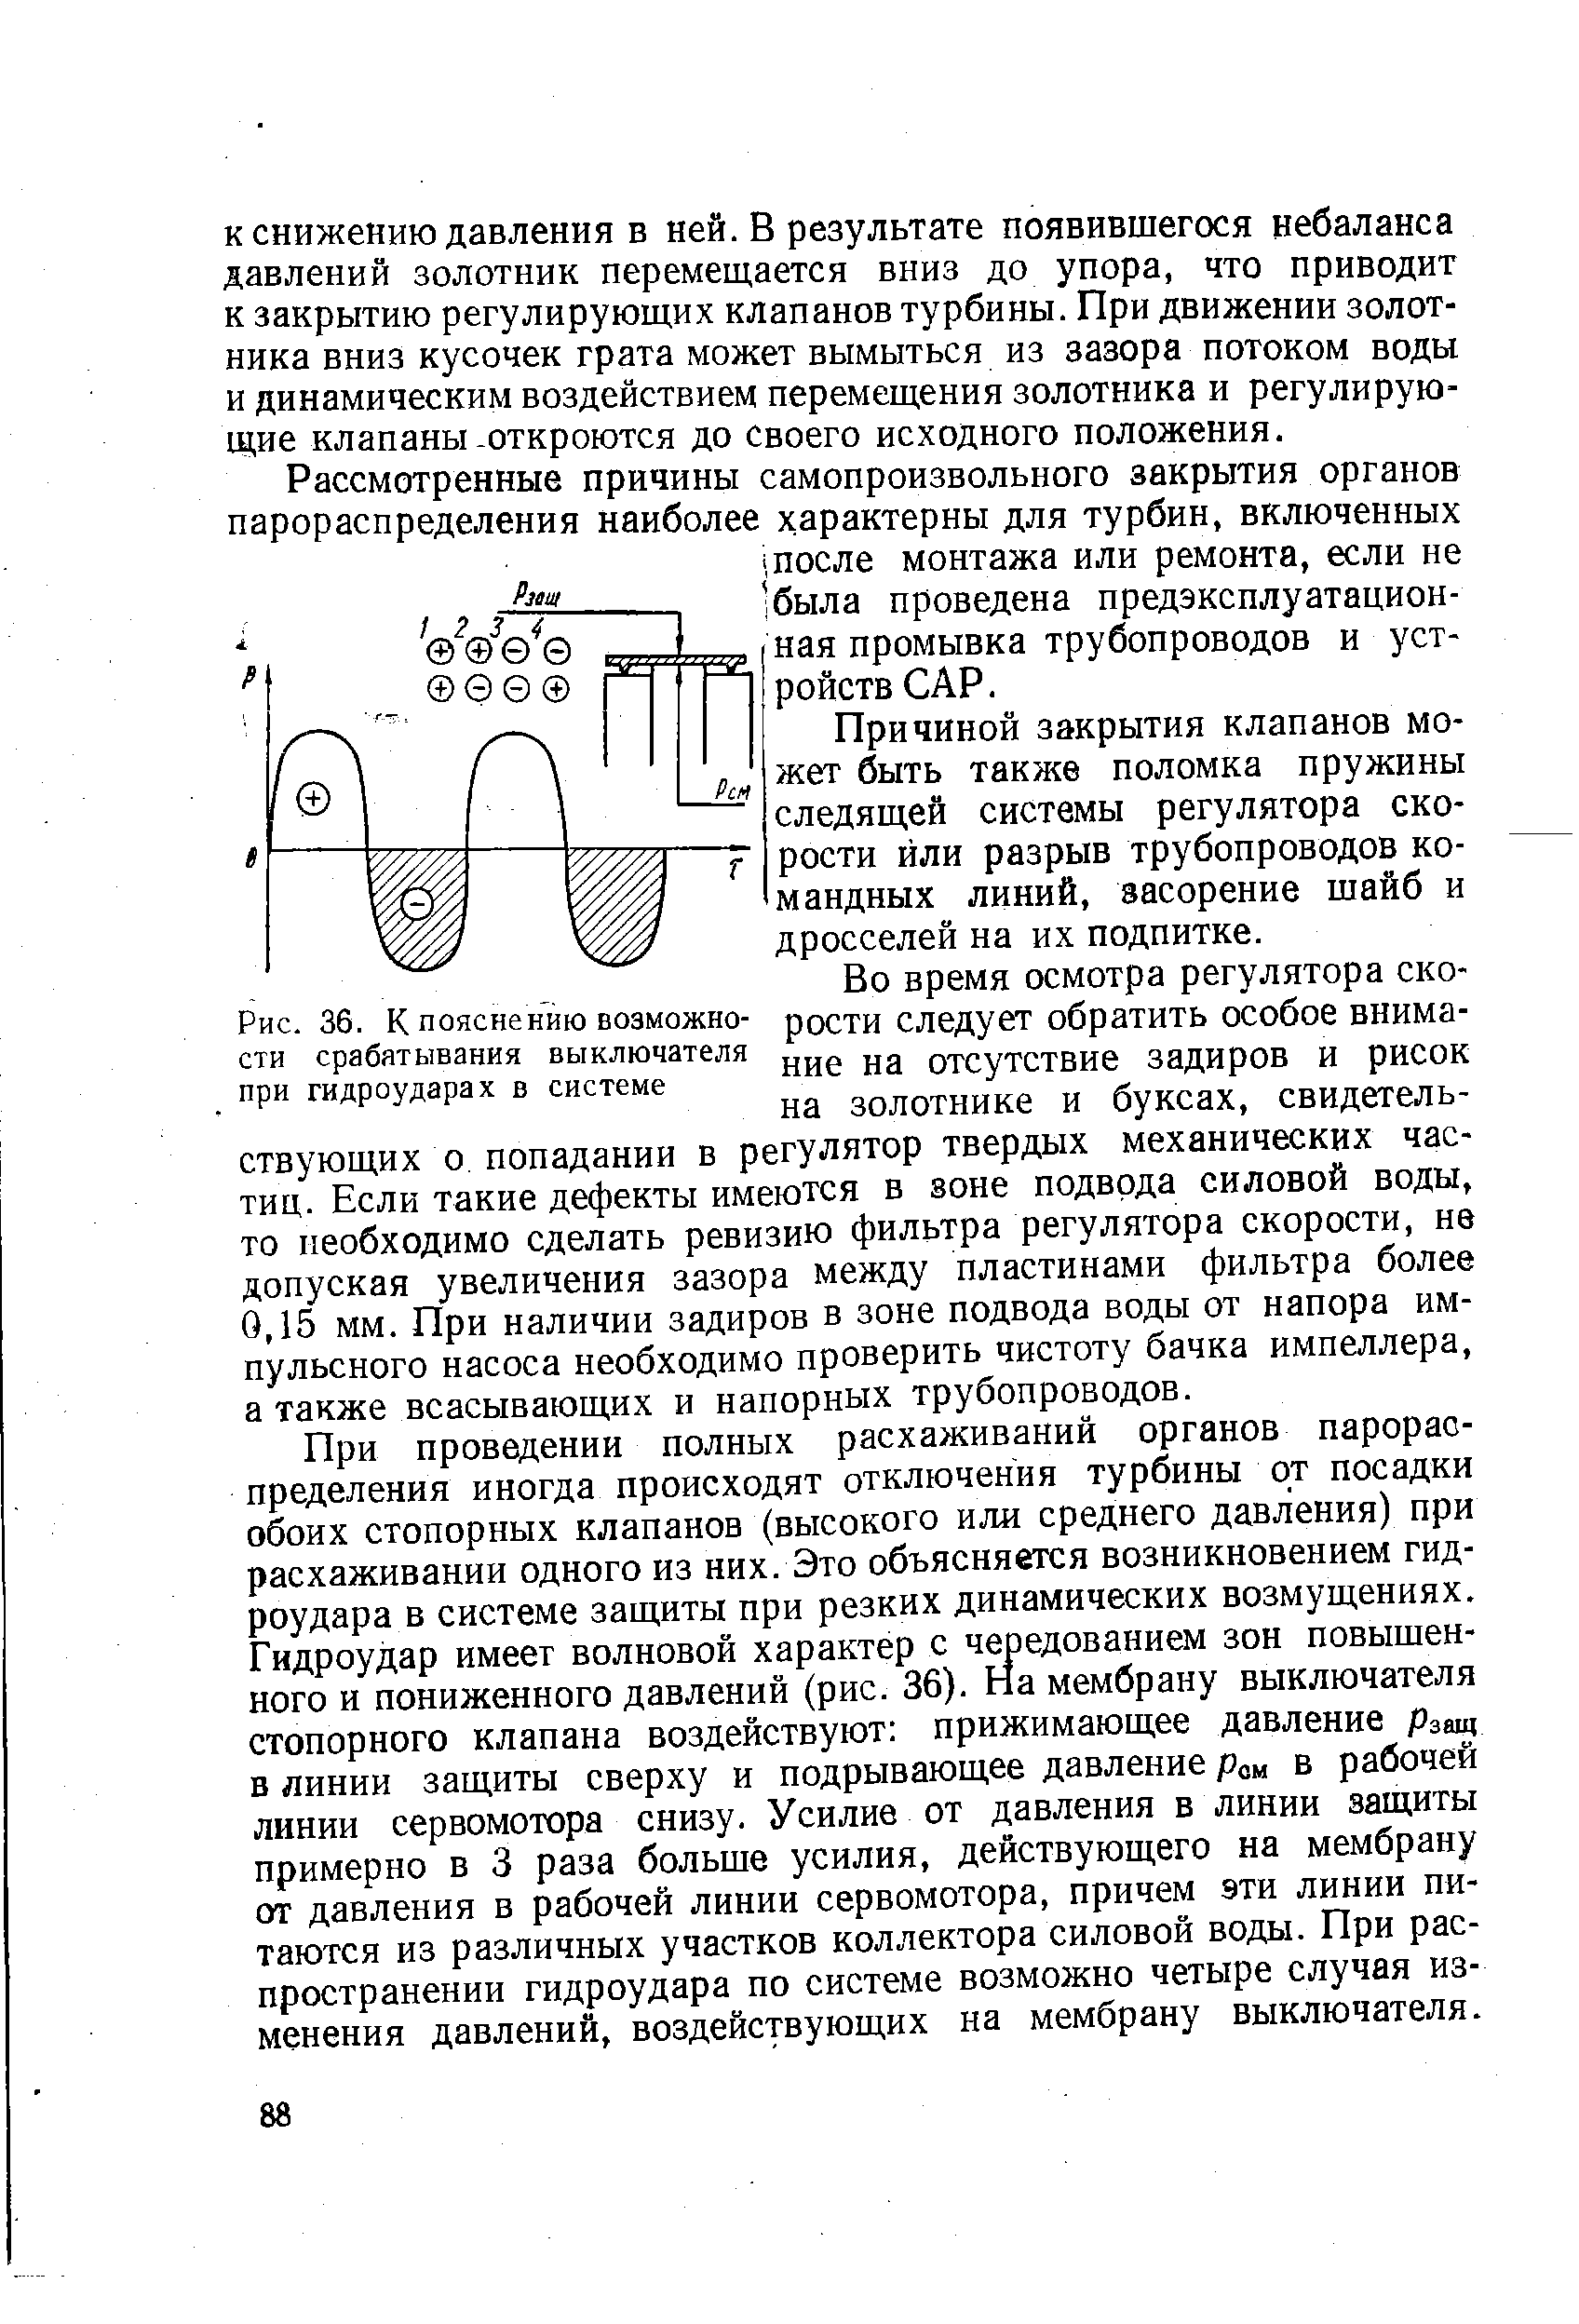 Рис. 36. К пояснению возможности срабатывания выключателя при гидроударах в системе
